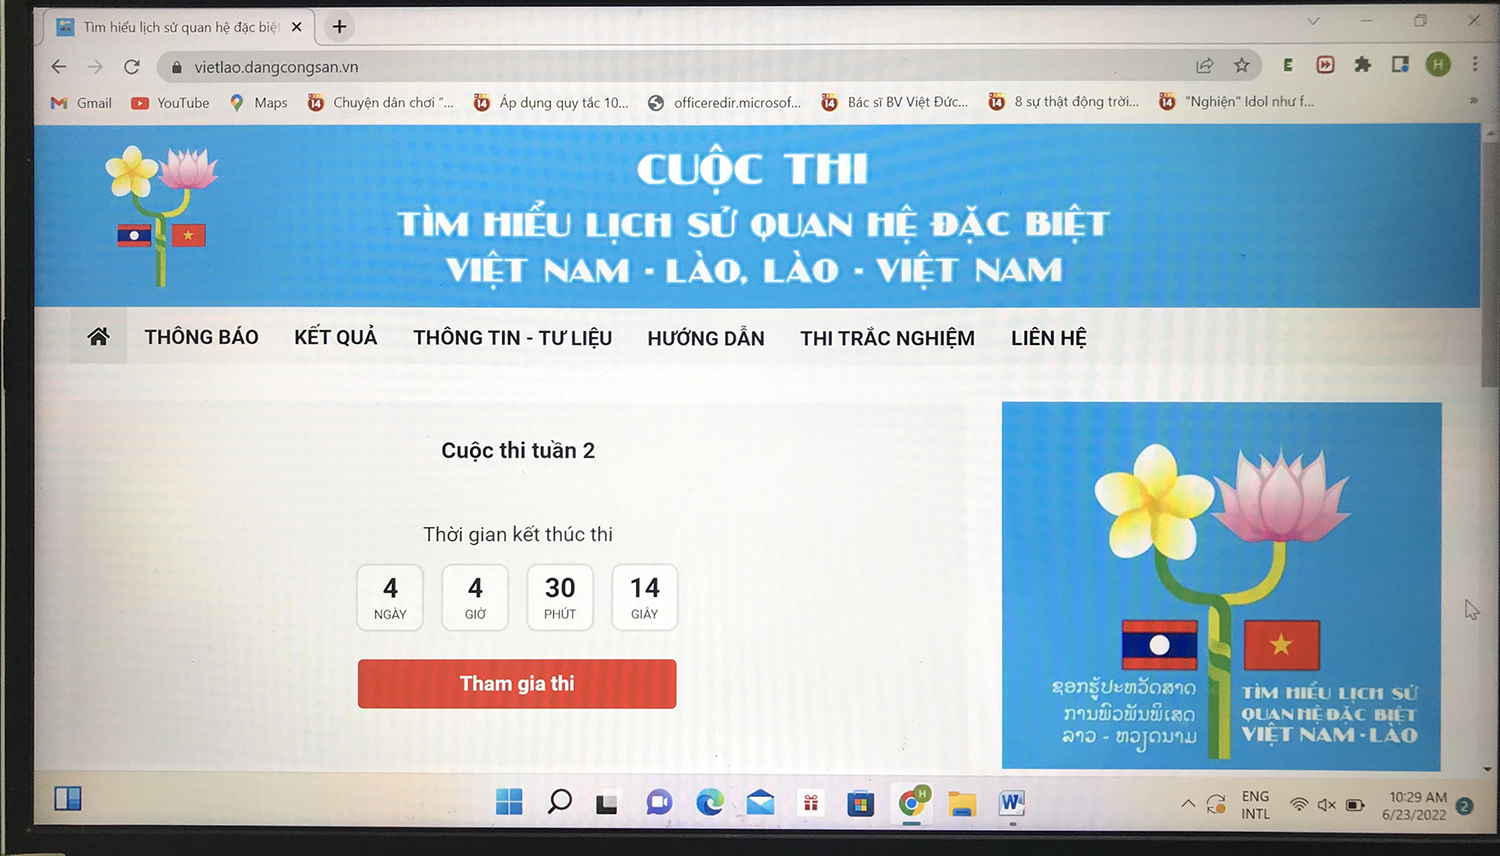 Quảng Bình tích cực hưởng ứng cuộc thi "Tìm hiểu lịch sử quan hệ đặc biệt Việt Nam-Lào, Lào-Việt Nam"